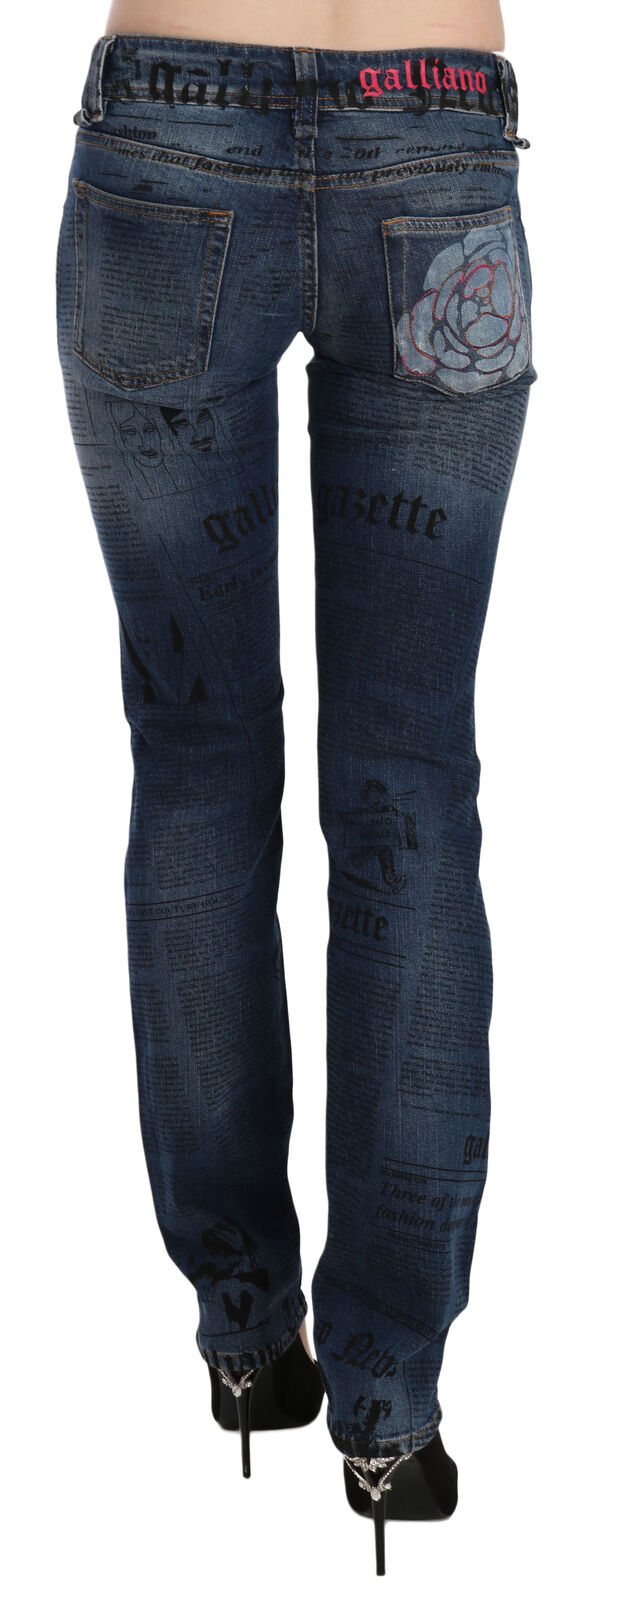 Тесни дънкови панталони с ниска талия със син вестникарски принт John Galliano